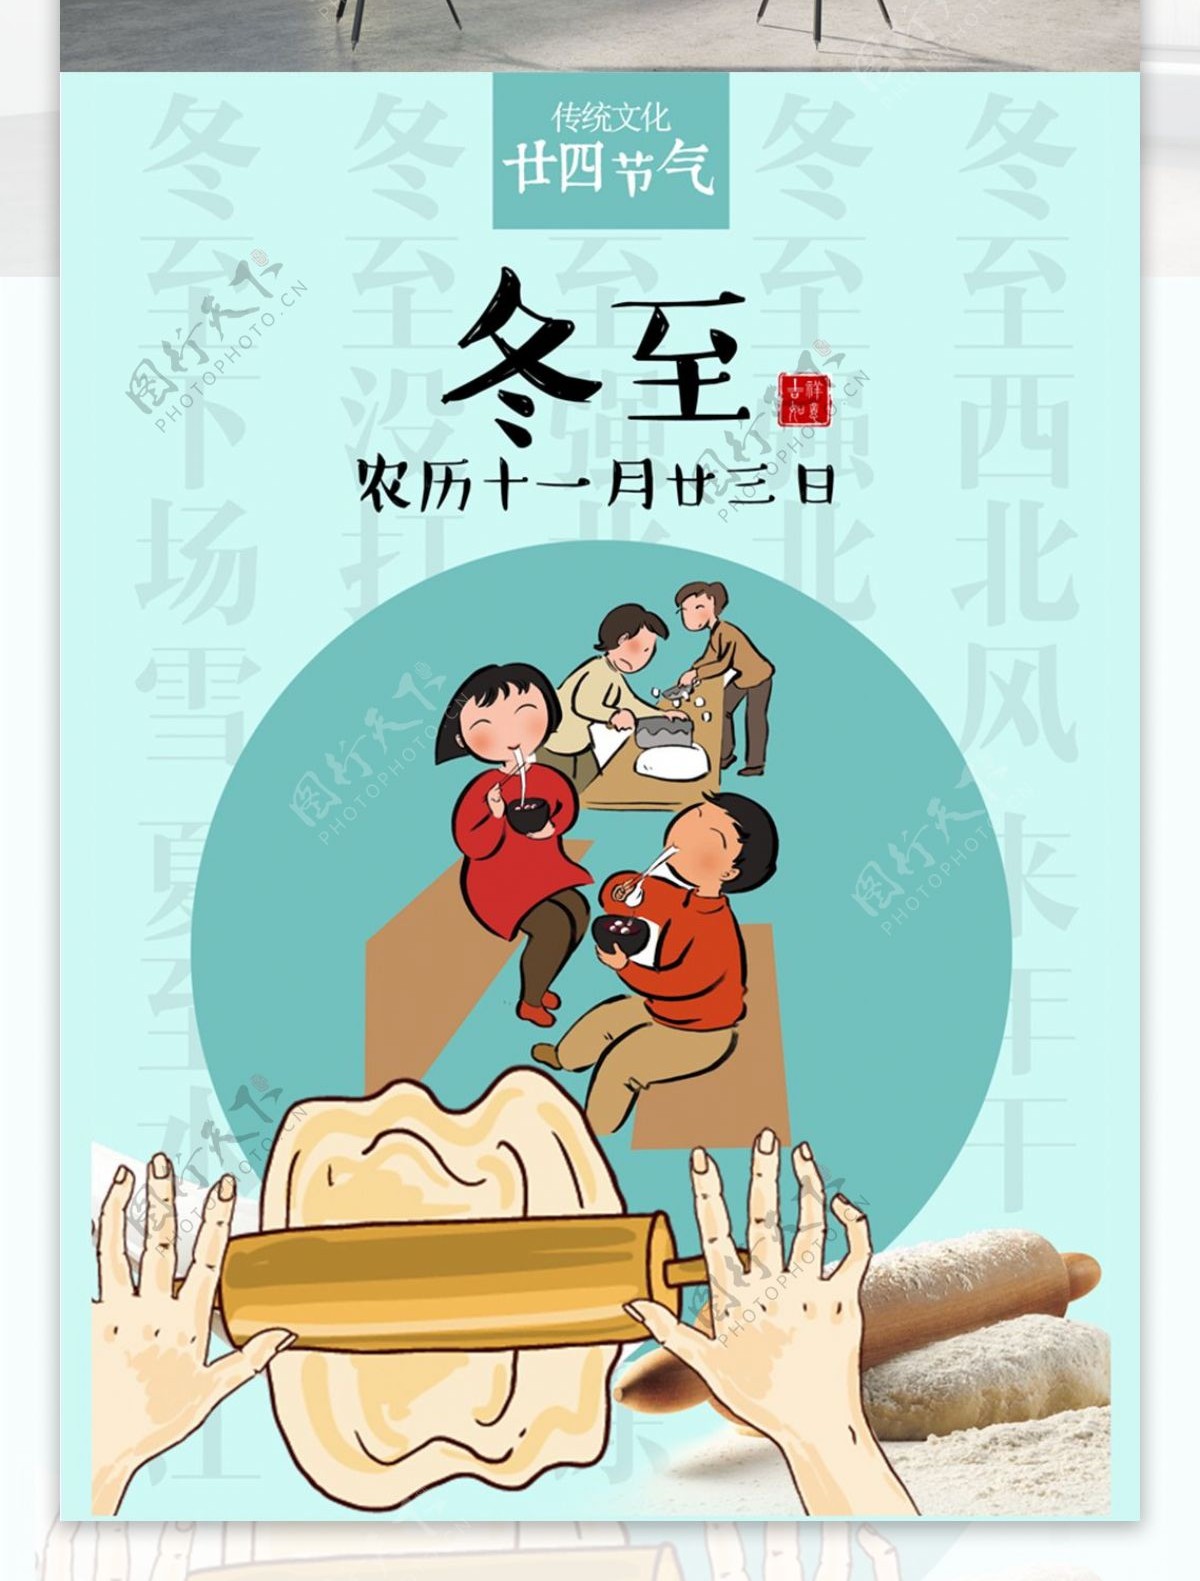 冬至二十四节气传统文化节日海报设计